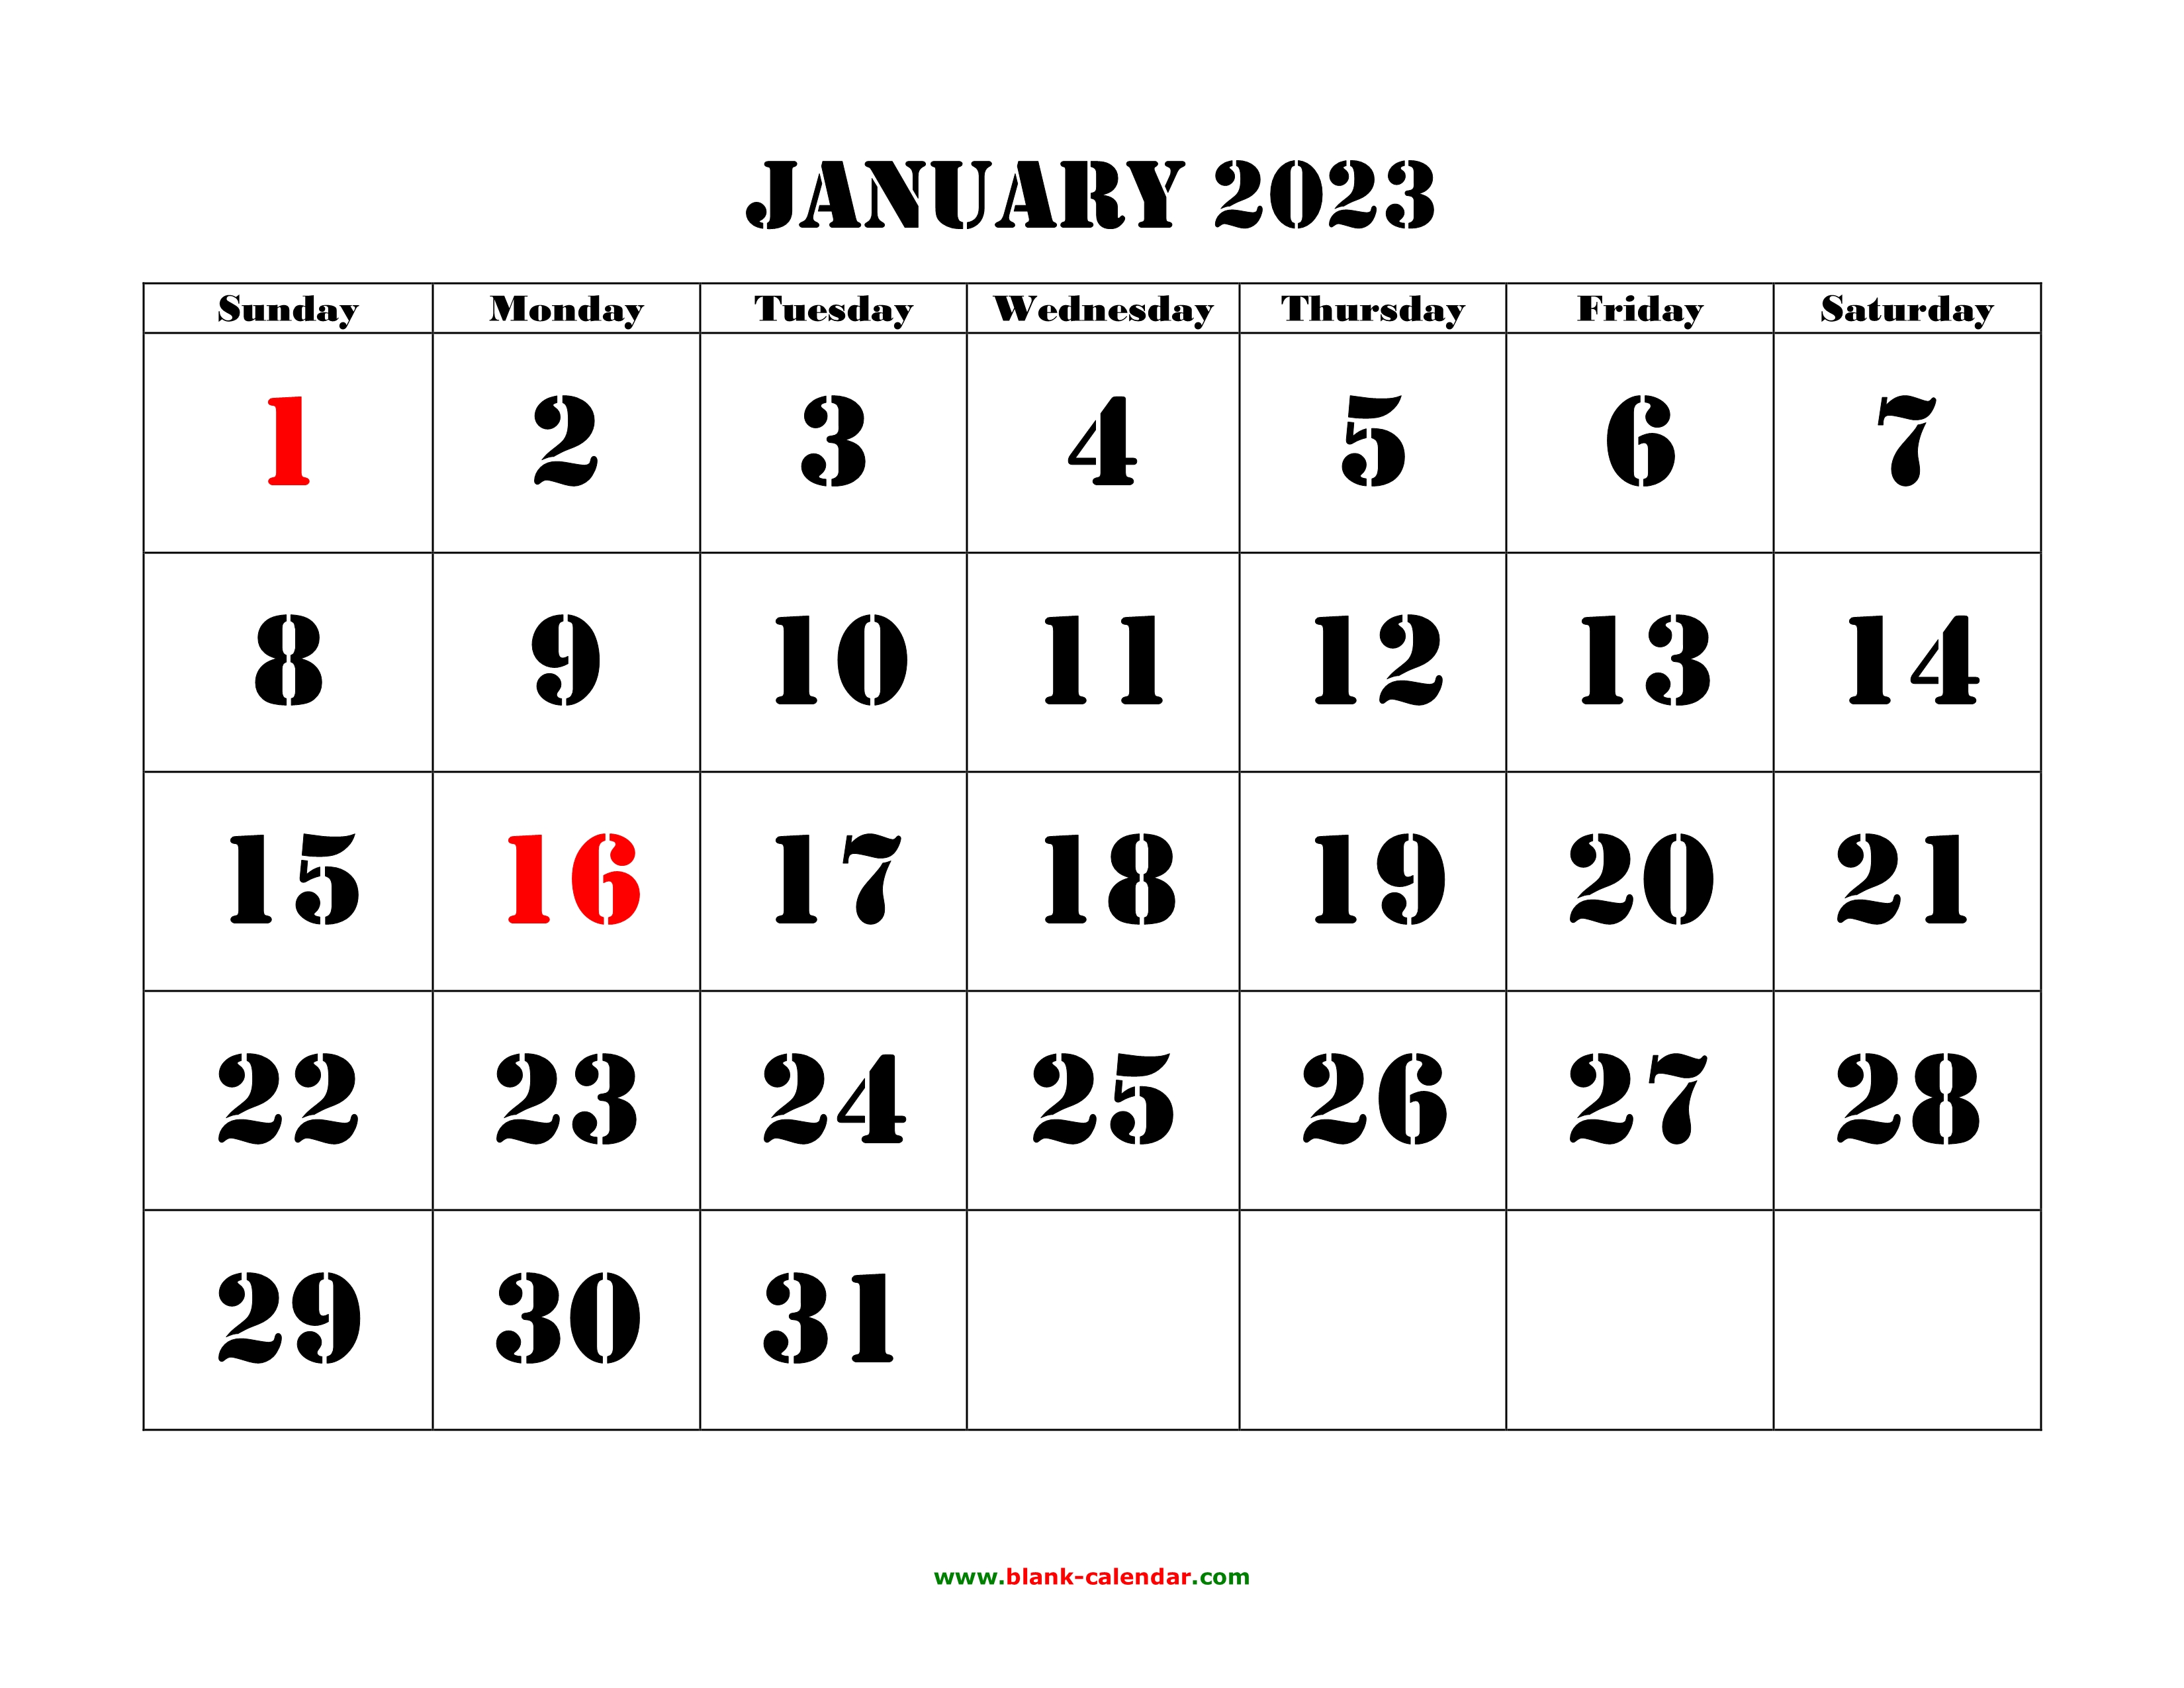 digital-planner-2023-calendar-monthly-calendar-calendars-planners